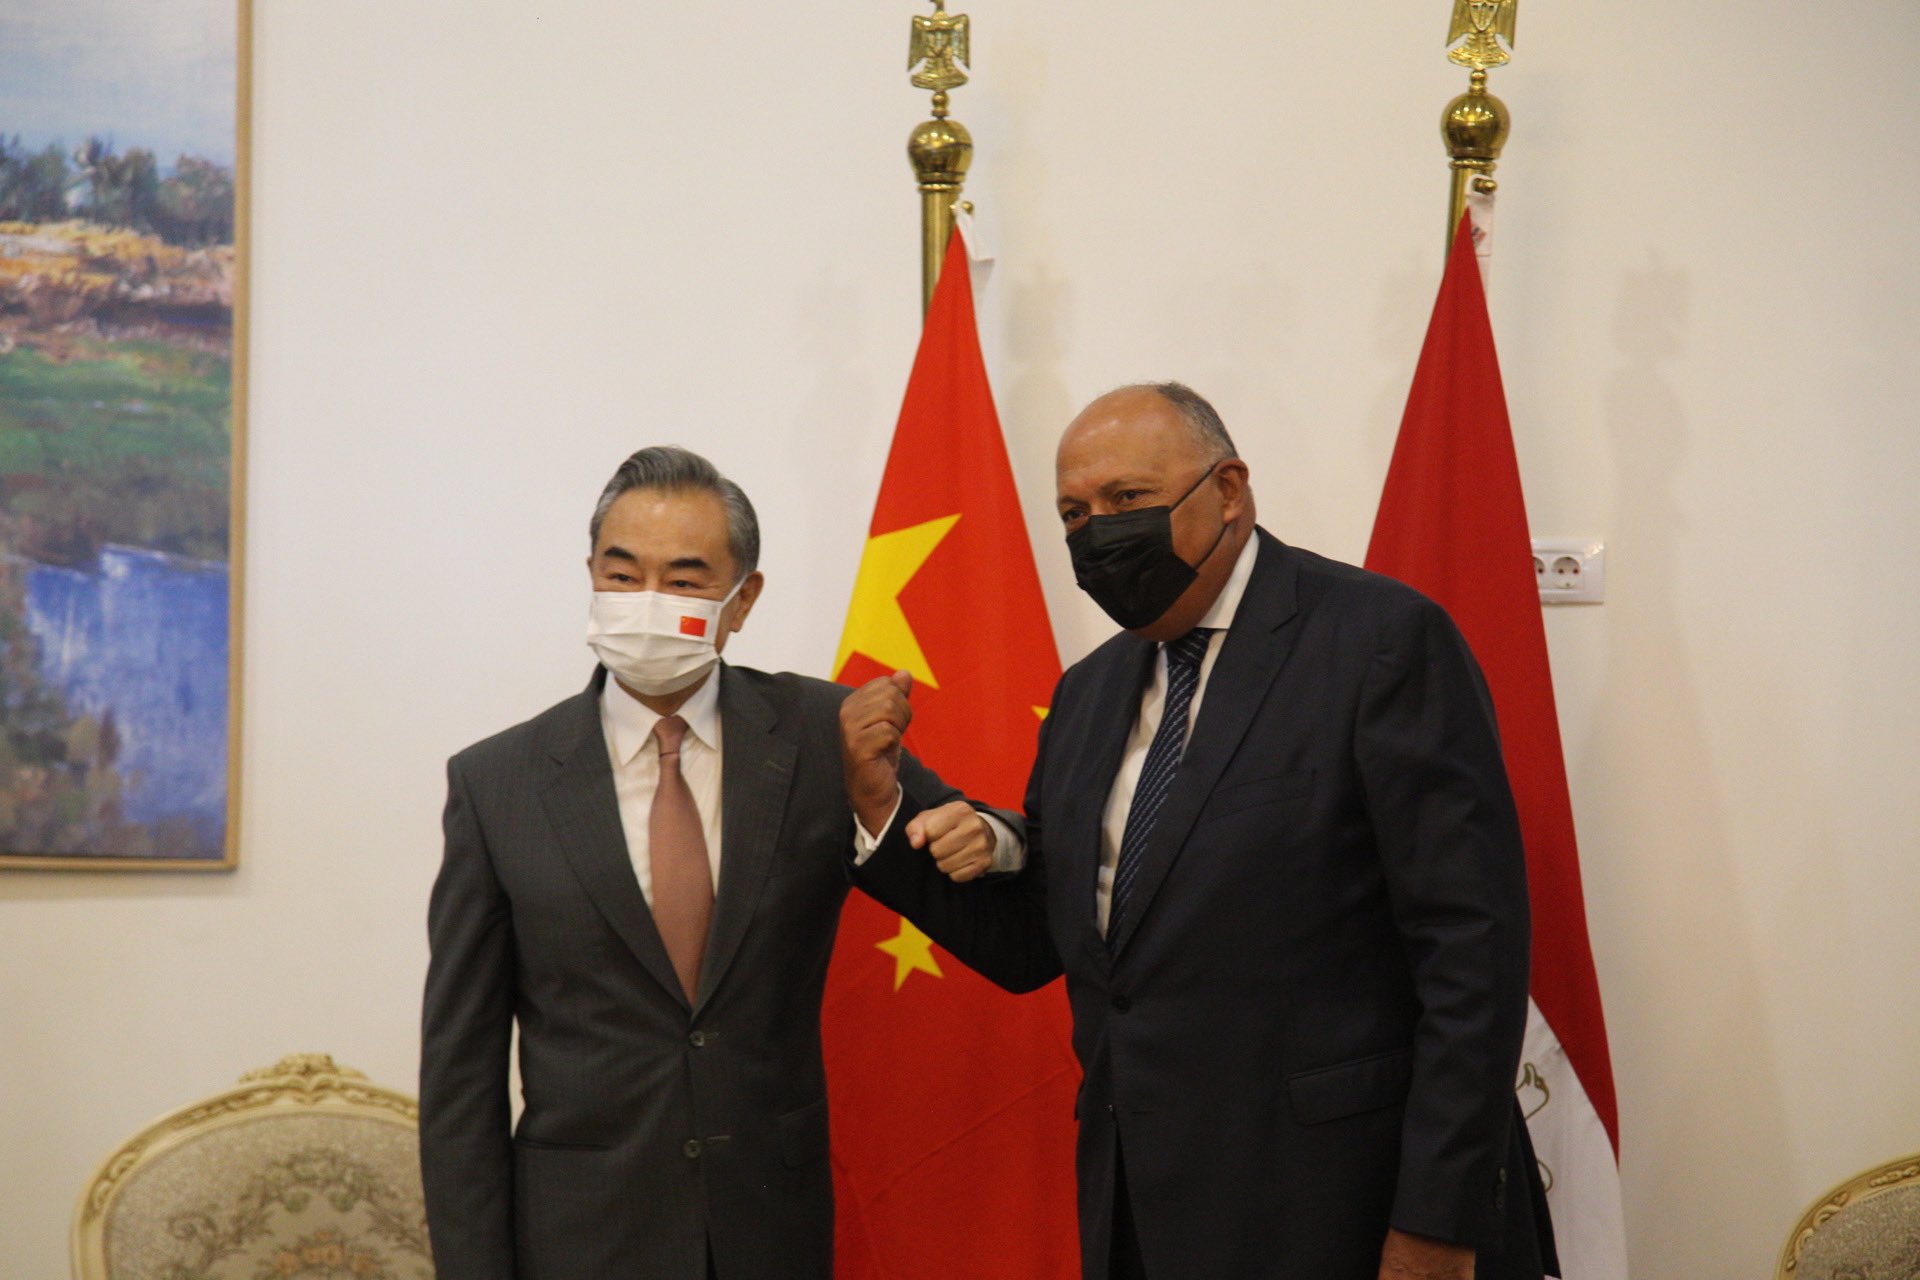 وزير الخارجية يستقبل وزير خارجية الصين فى العلمين